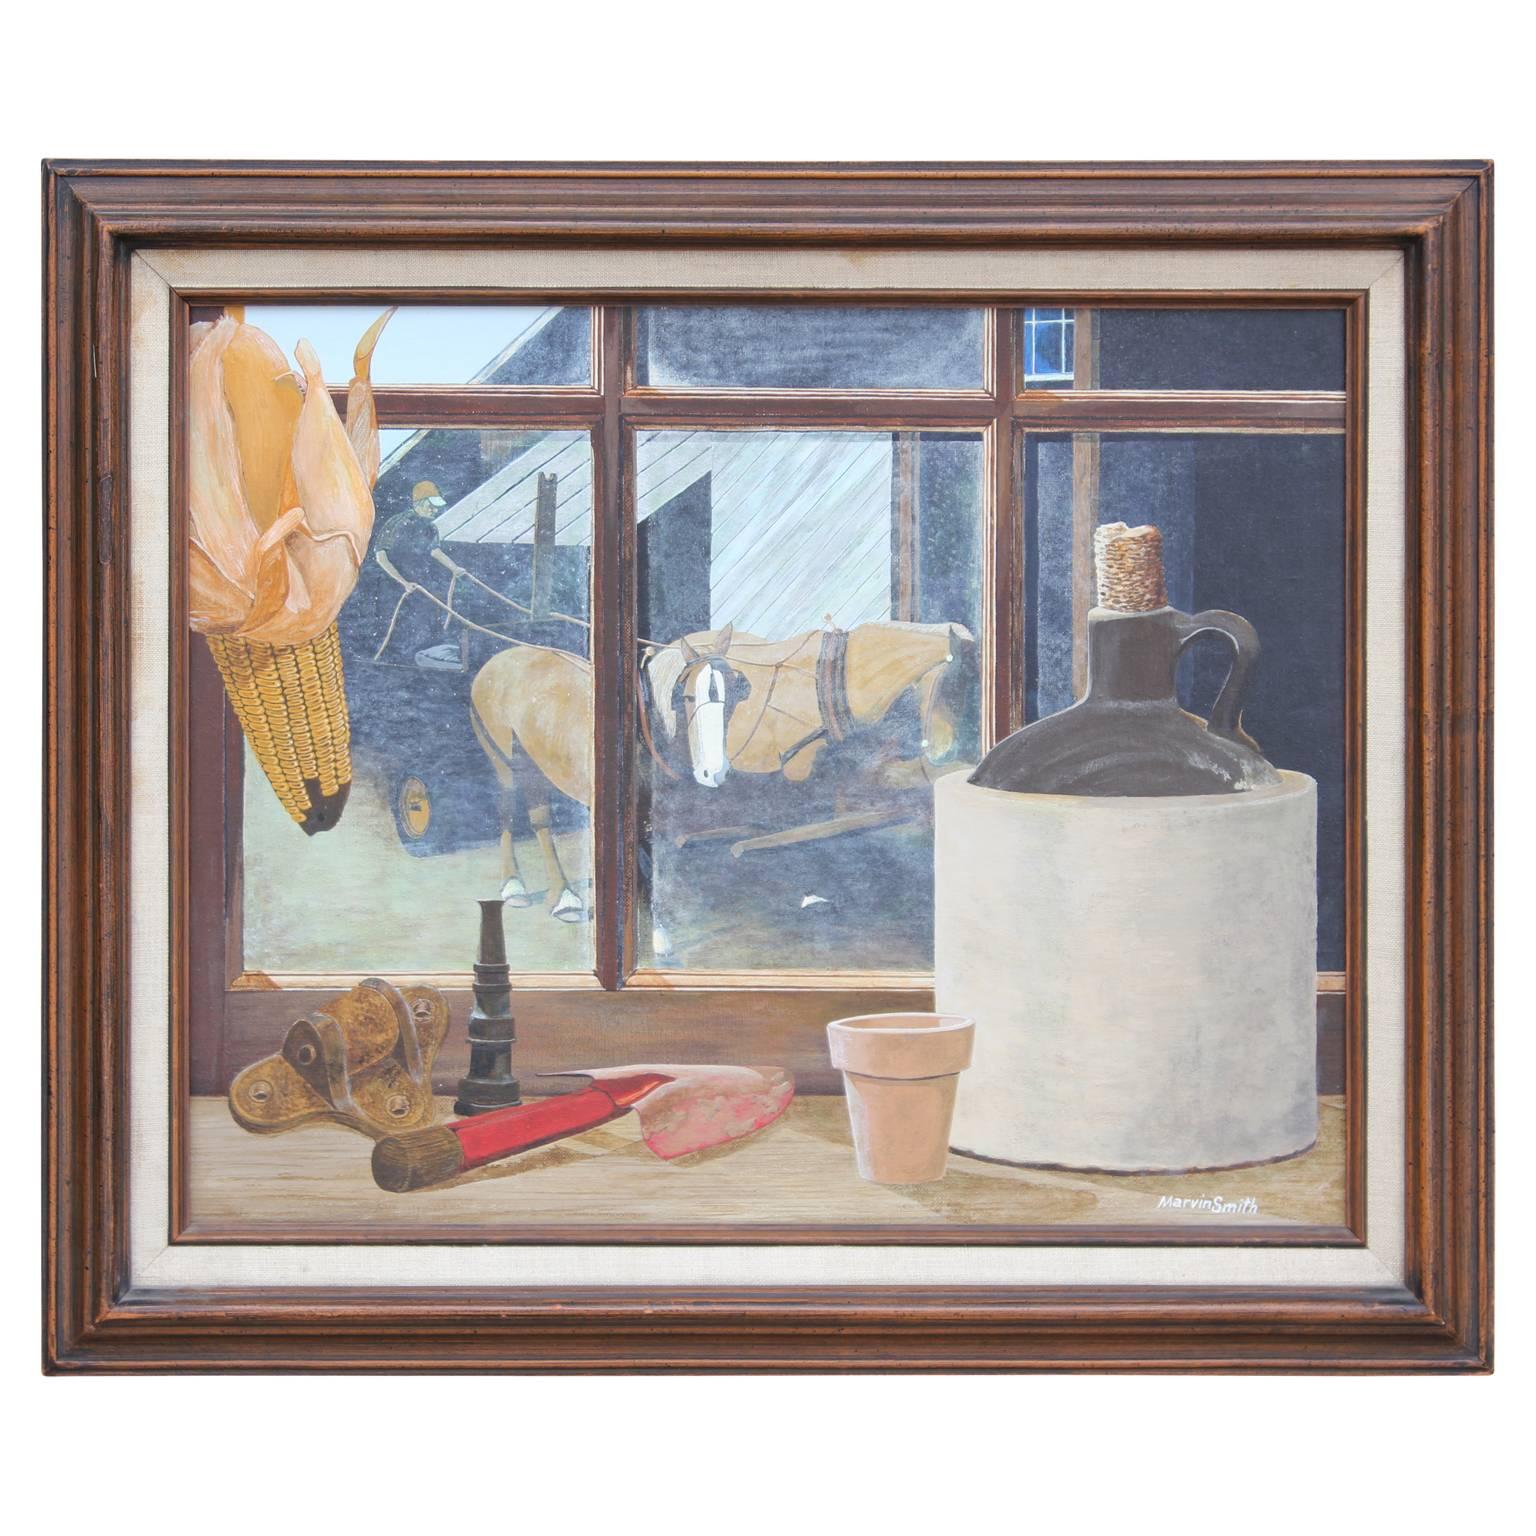 Marvin Smith Animal Painting – Stillleben, Gemälde einer Landvitrine mit Fenstern und Pferden